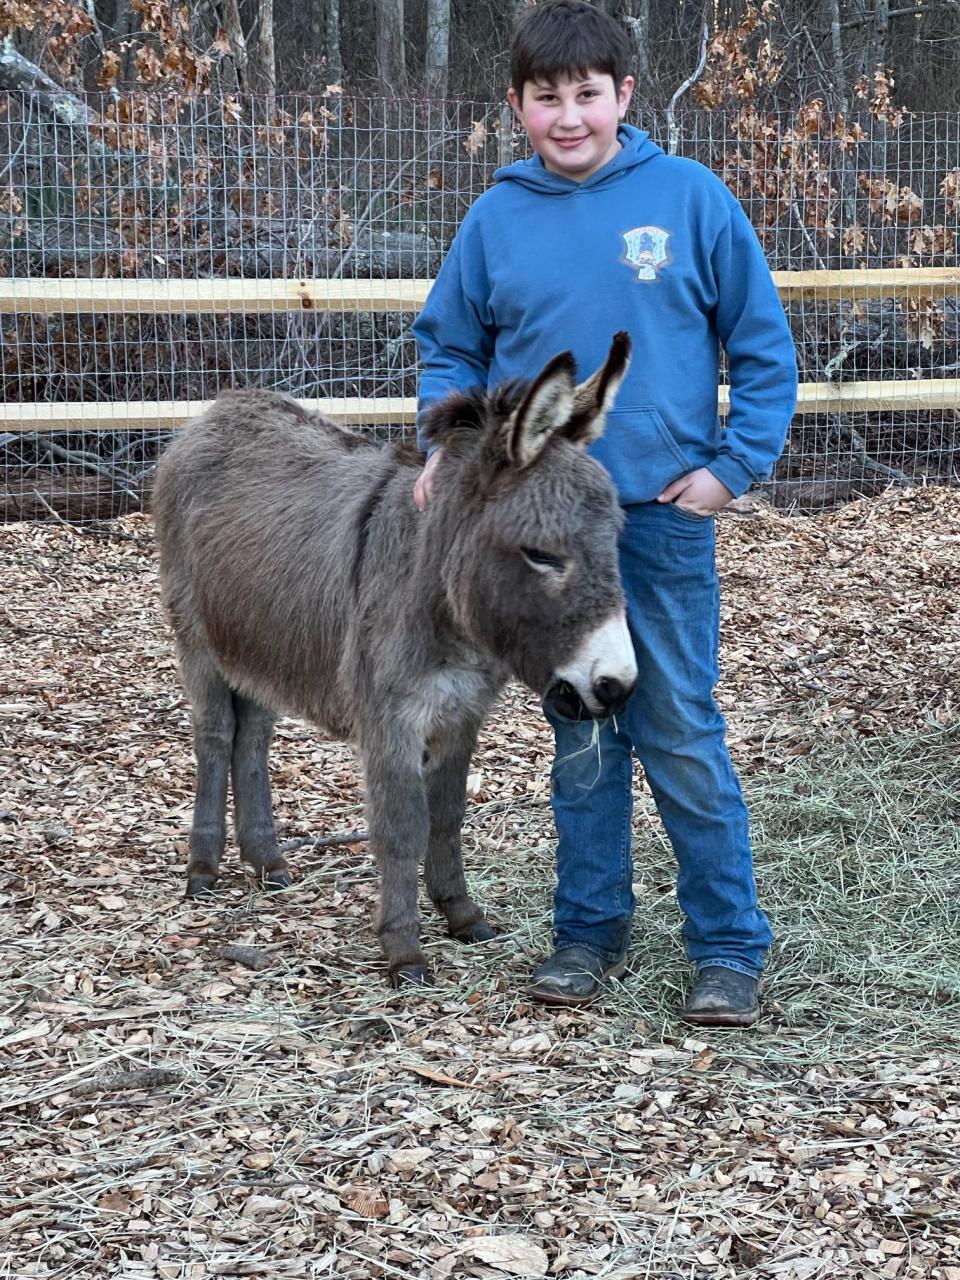 Anthony Ghazal with his pet donkey, Lulu.